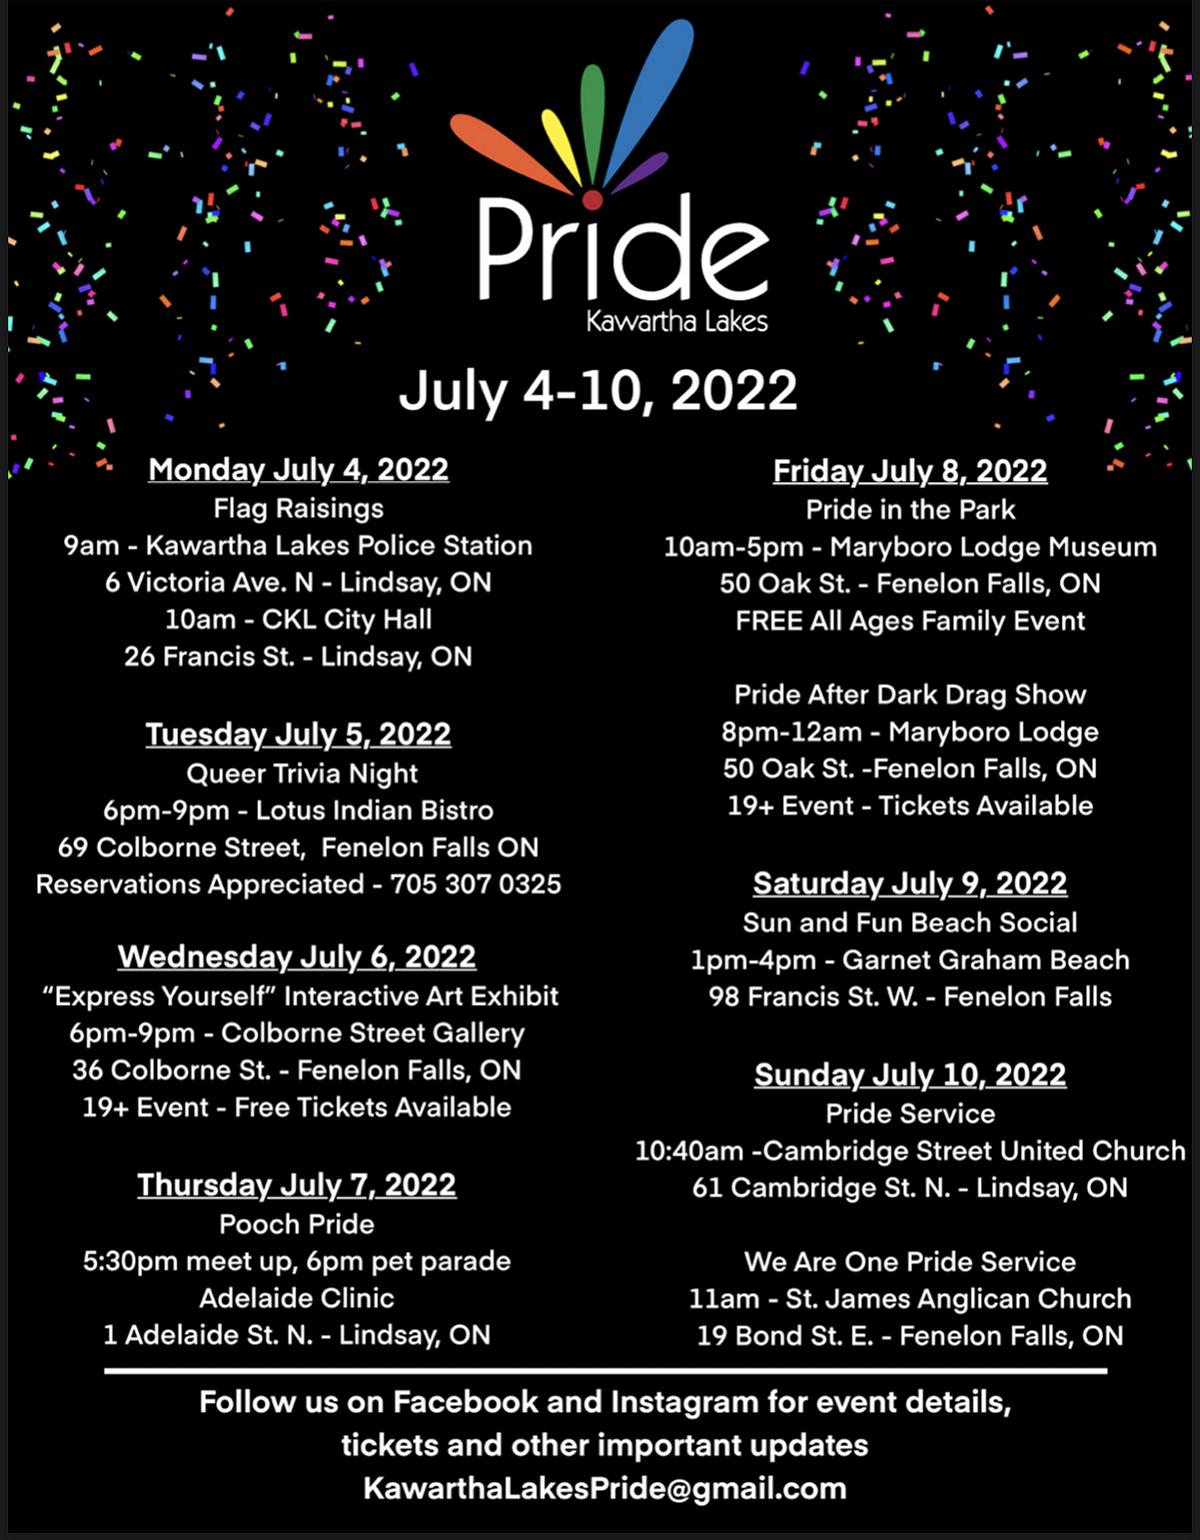 Pride Week window display in Fenelon Falls helping spark